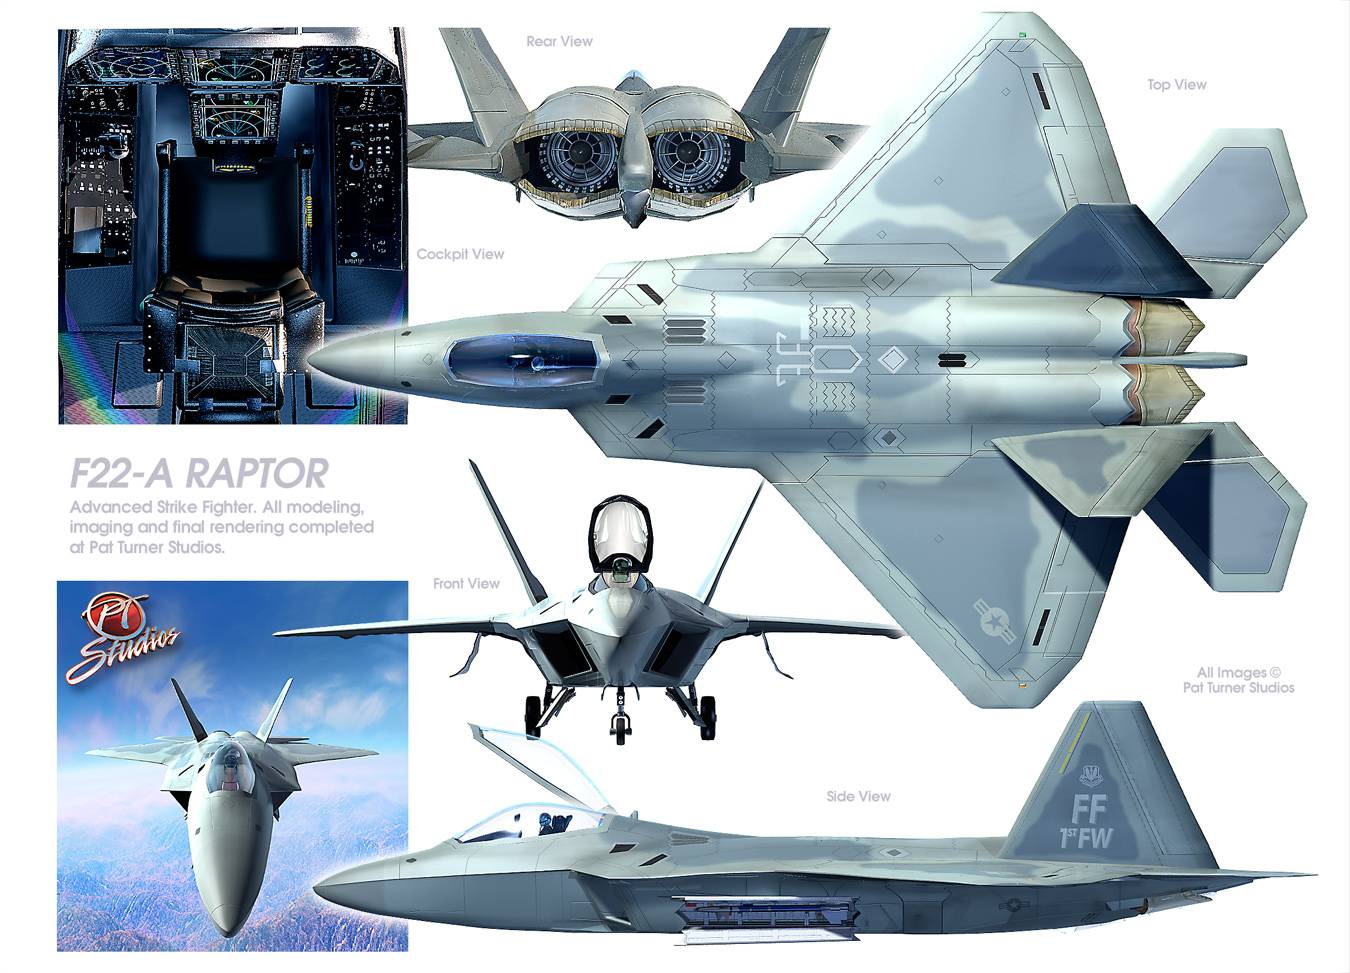 F-22 raptor истребитель пятого поколения, технические характеристики лтх, вооружение и авионика самолета, потолок скорости, кабина пилота